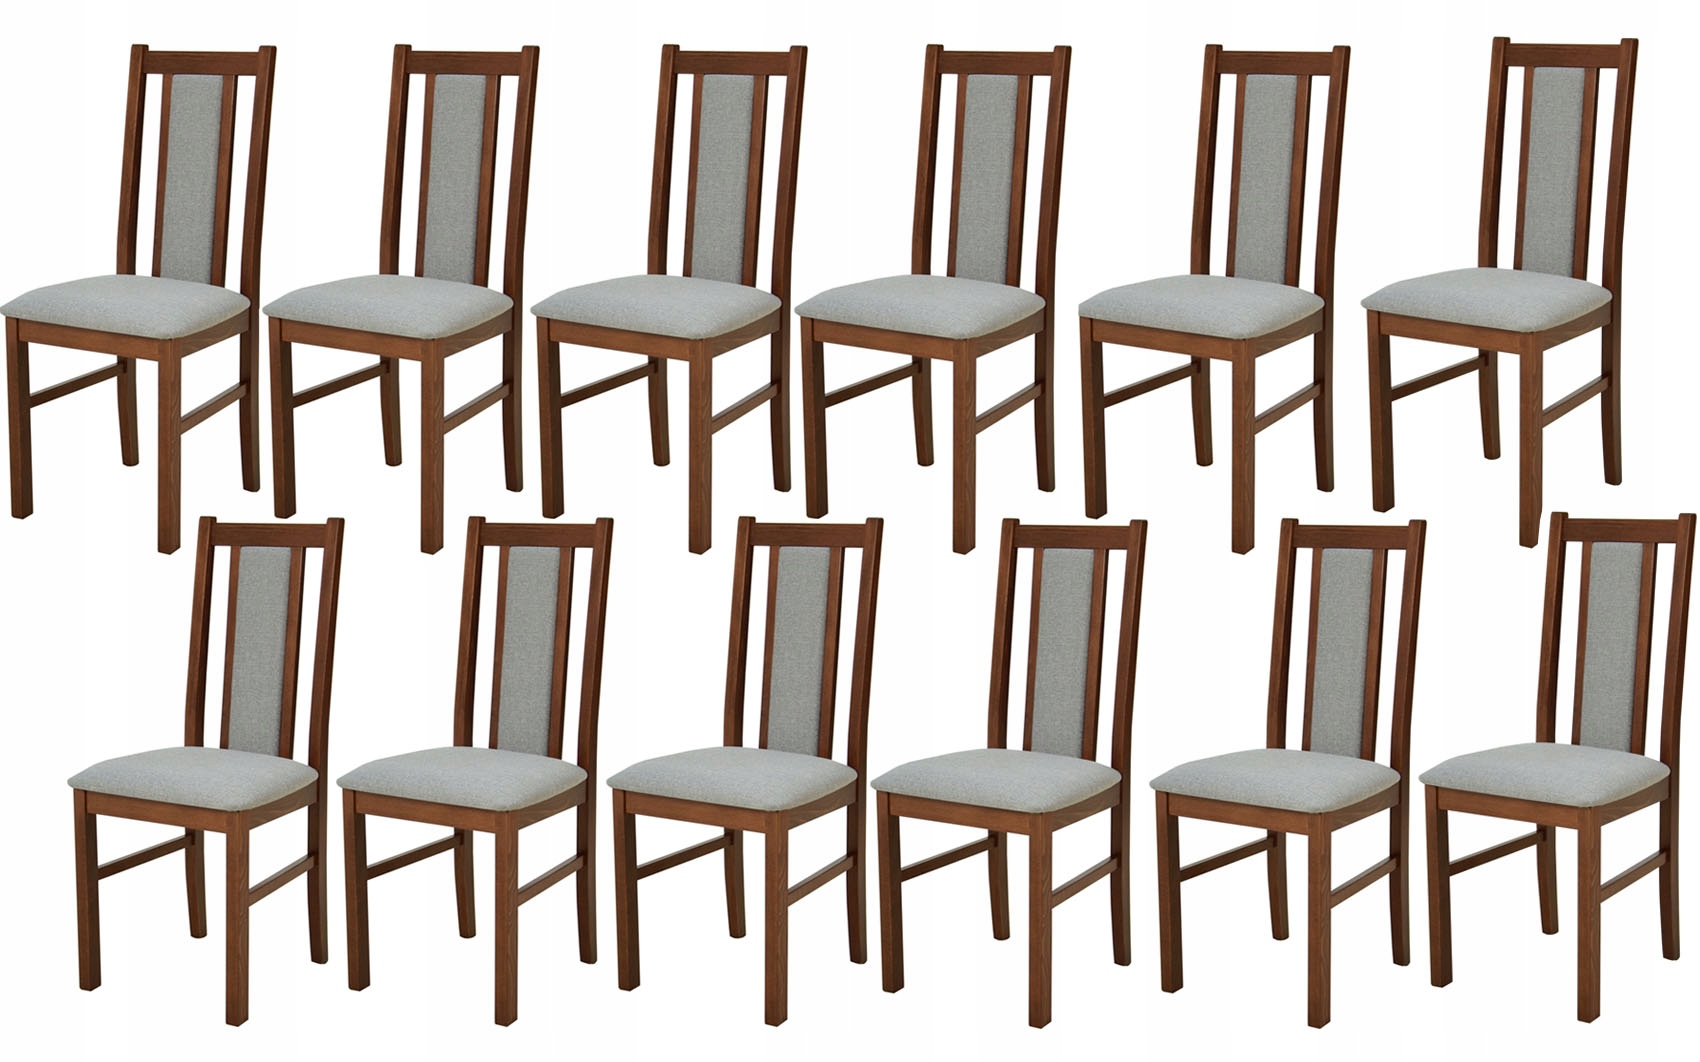  Набор стульев для гостиной, 12 деревянных стульев.: отзывы, фото .